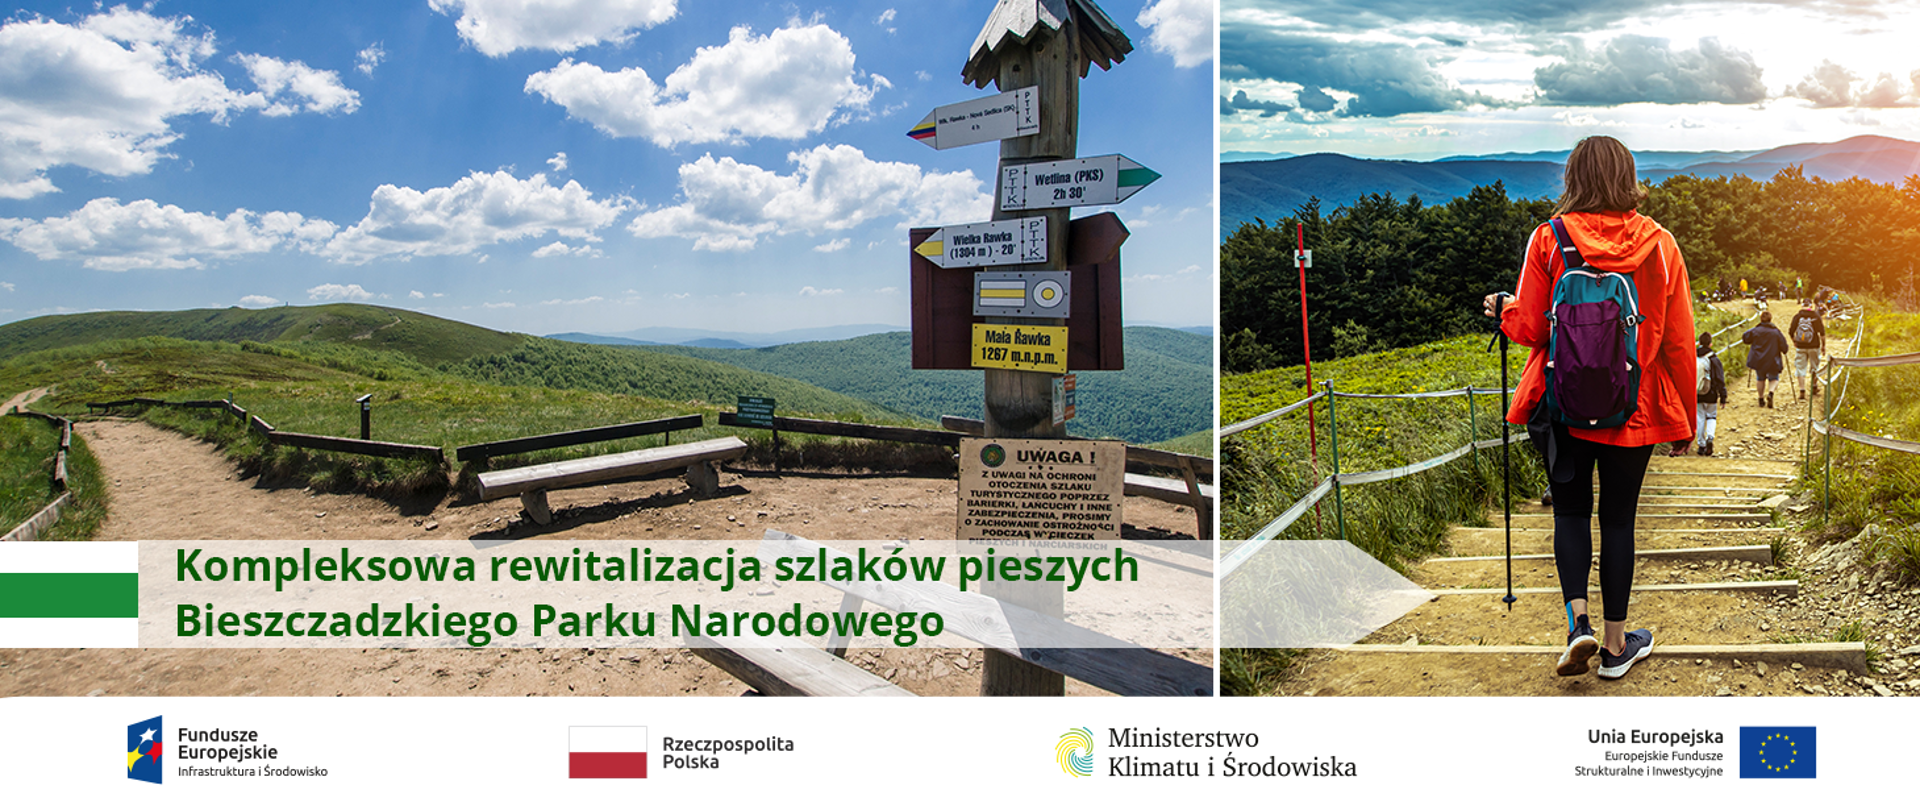 Wykonanie kompleksowej rewitalizacji szlaków pieszych Bieszczadzkiego Parku Narodowego w celu wzmocnienia ochrony ich otoczenia przyrodniczego w latach 2017-2020